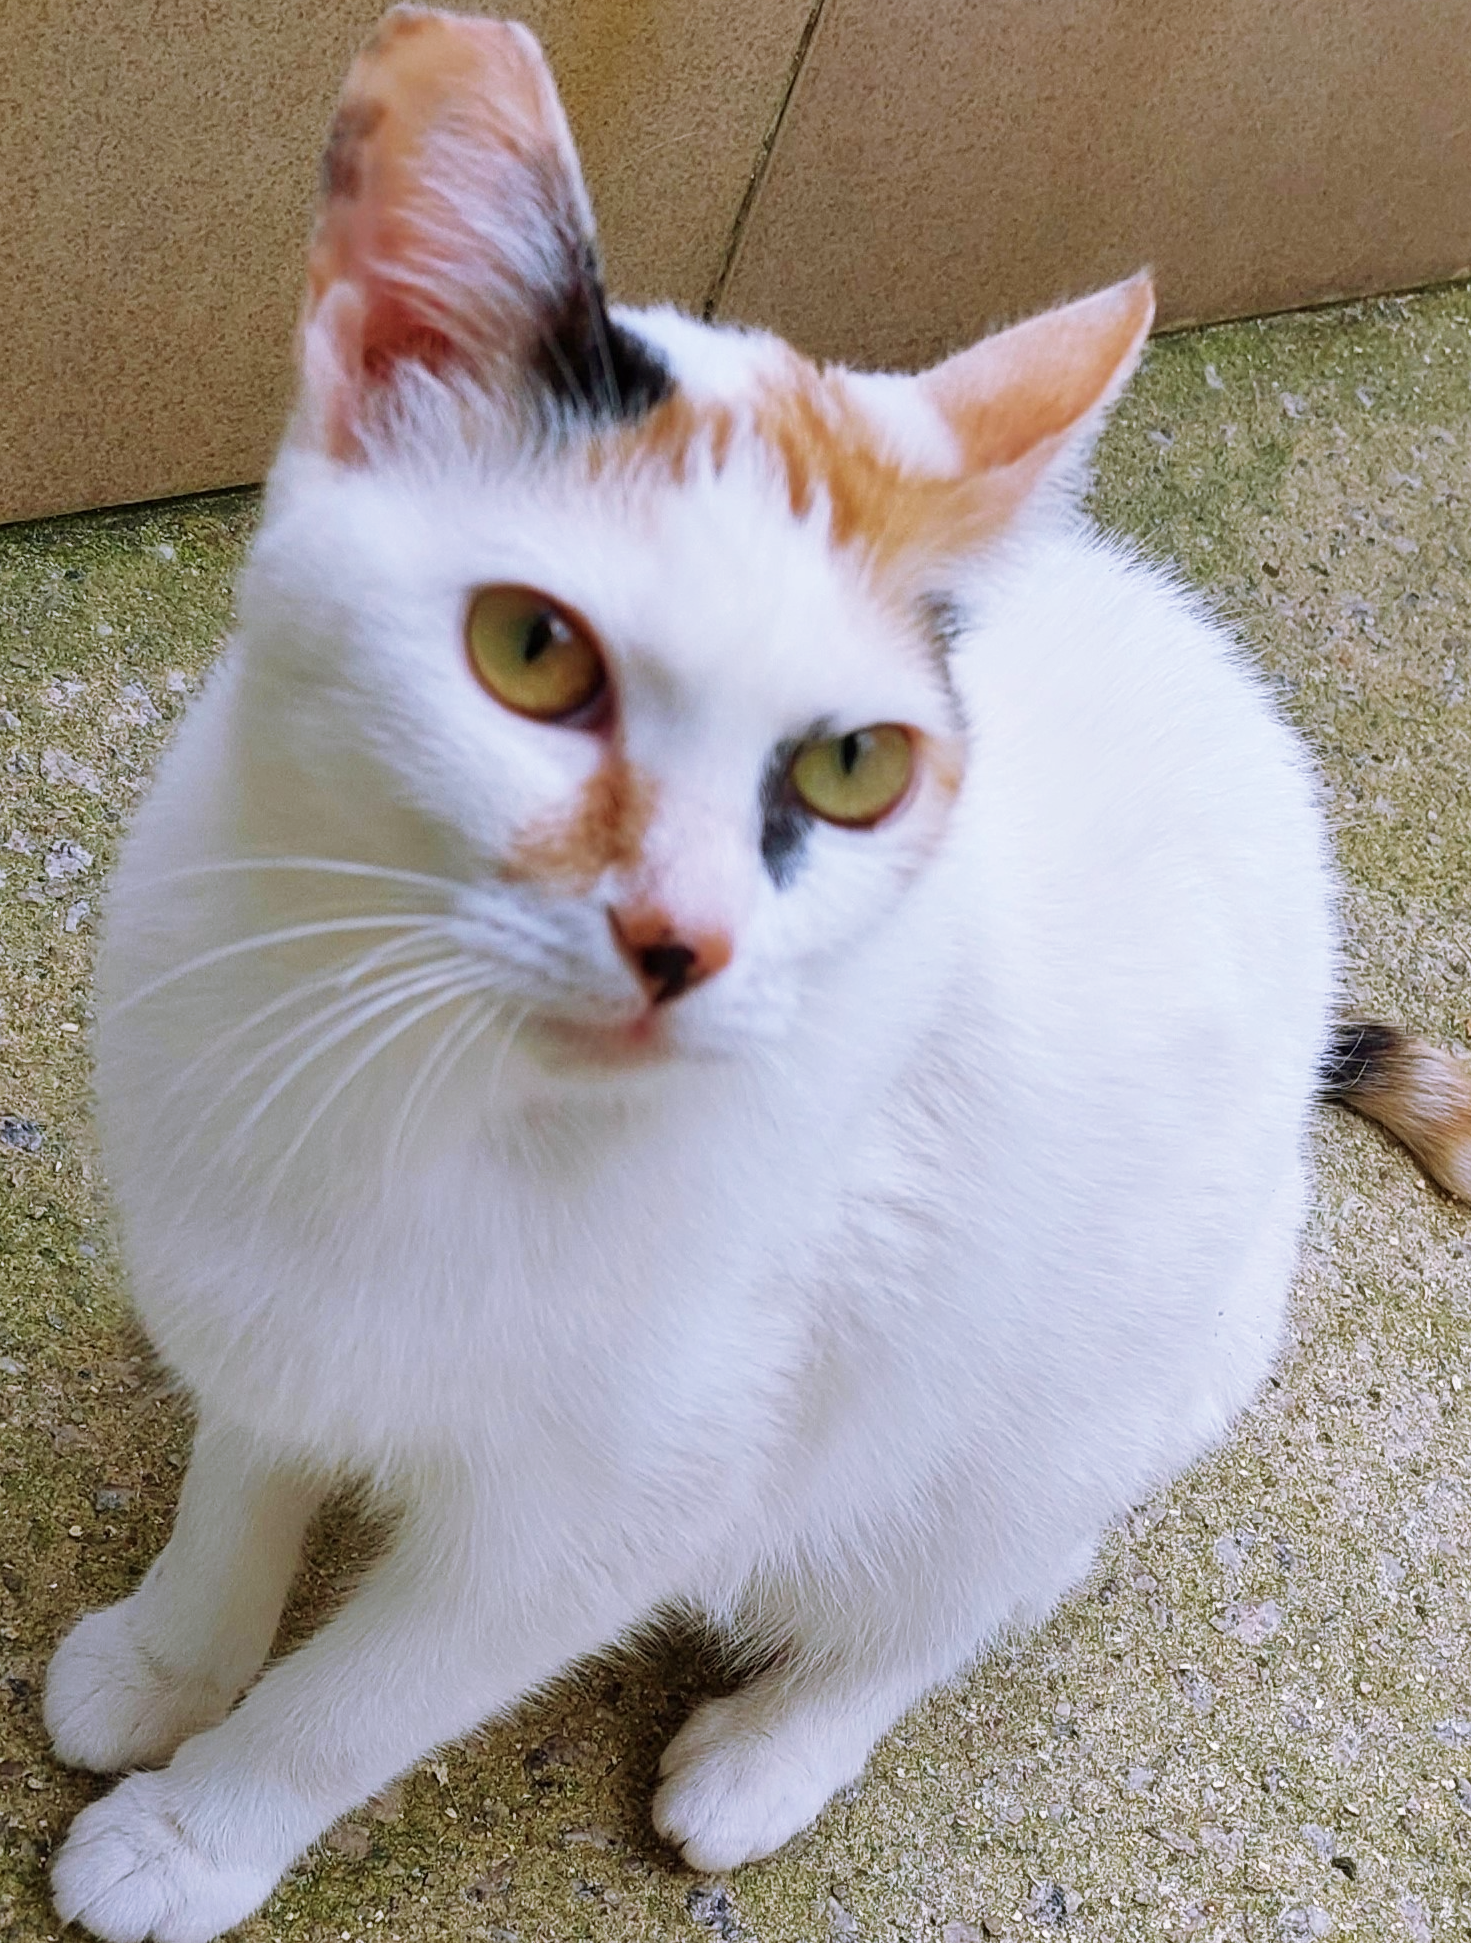 Charllote possui pelo branco com manchas pretas e laranjas na região das orelhas, da cauda e focinho. Ela possui olhos amarelos e está sentada.